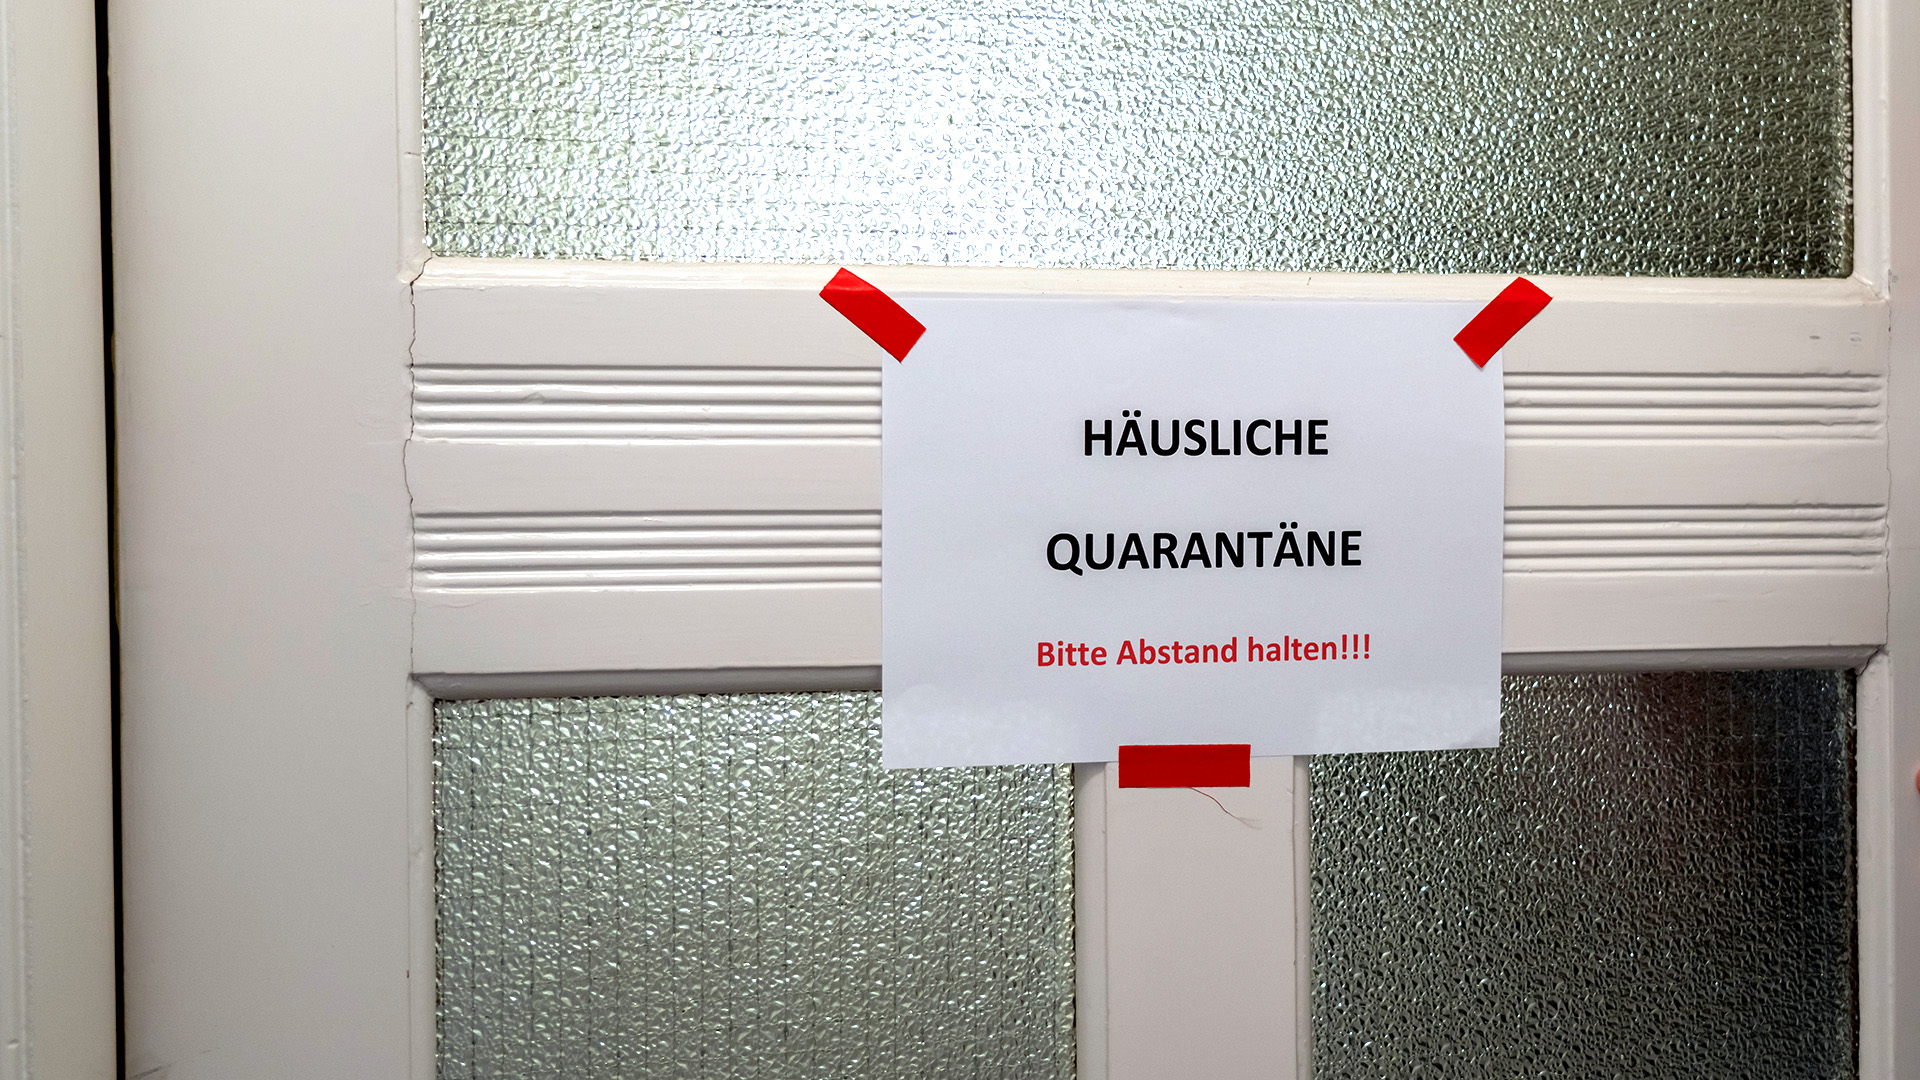 Ein Zettel mit der Aufschrift "Häusliche Quarantäne Bitte Abstand halten!!!" hängt an einer Tür